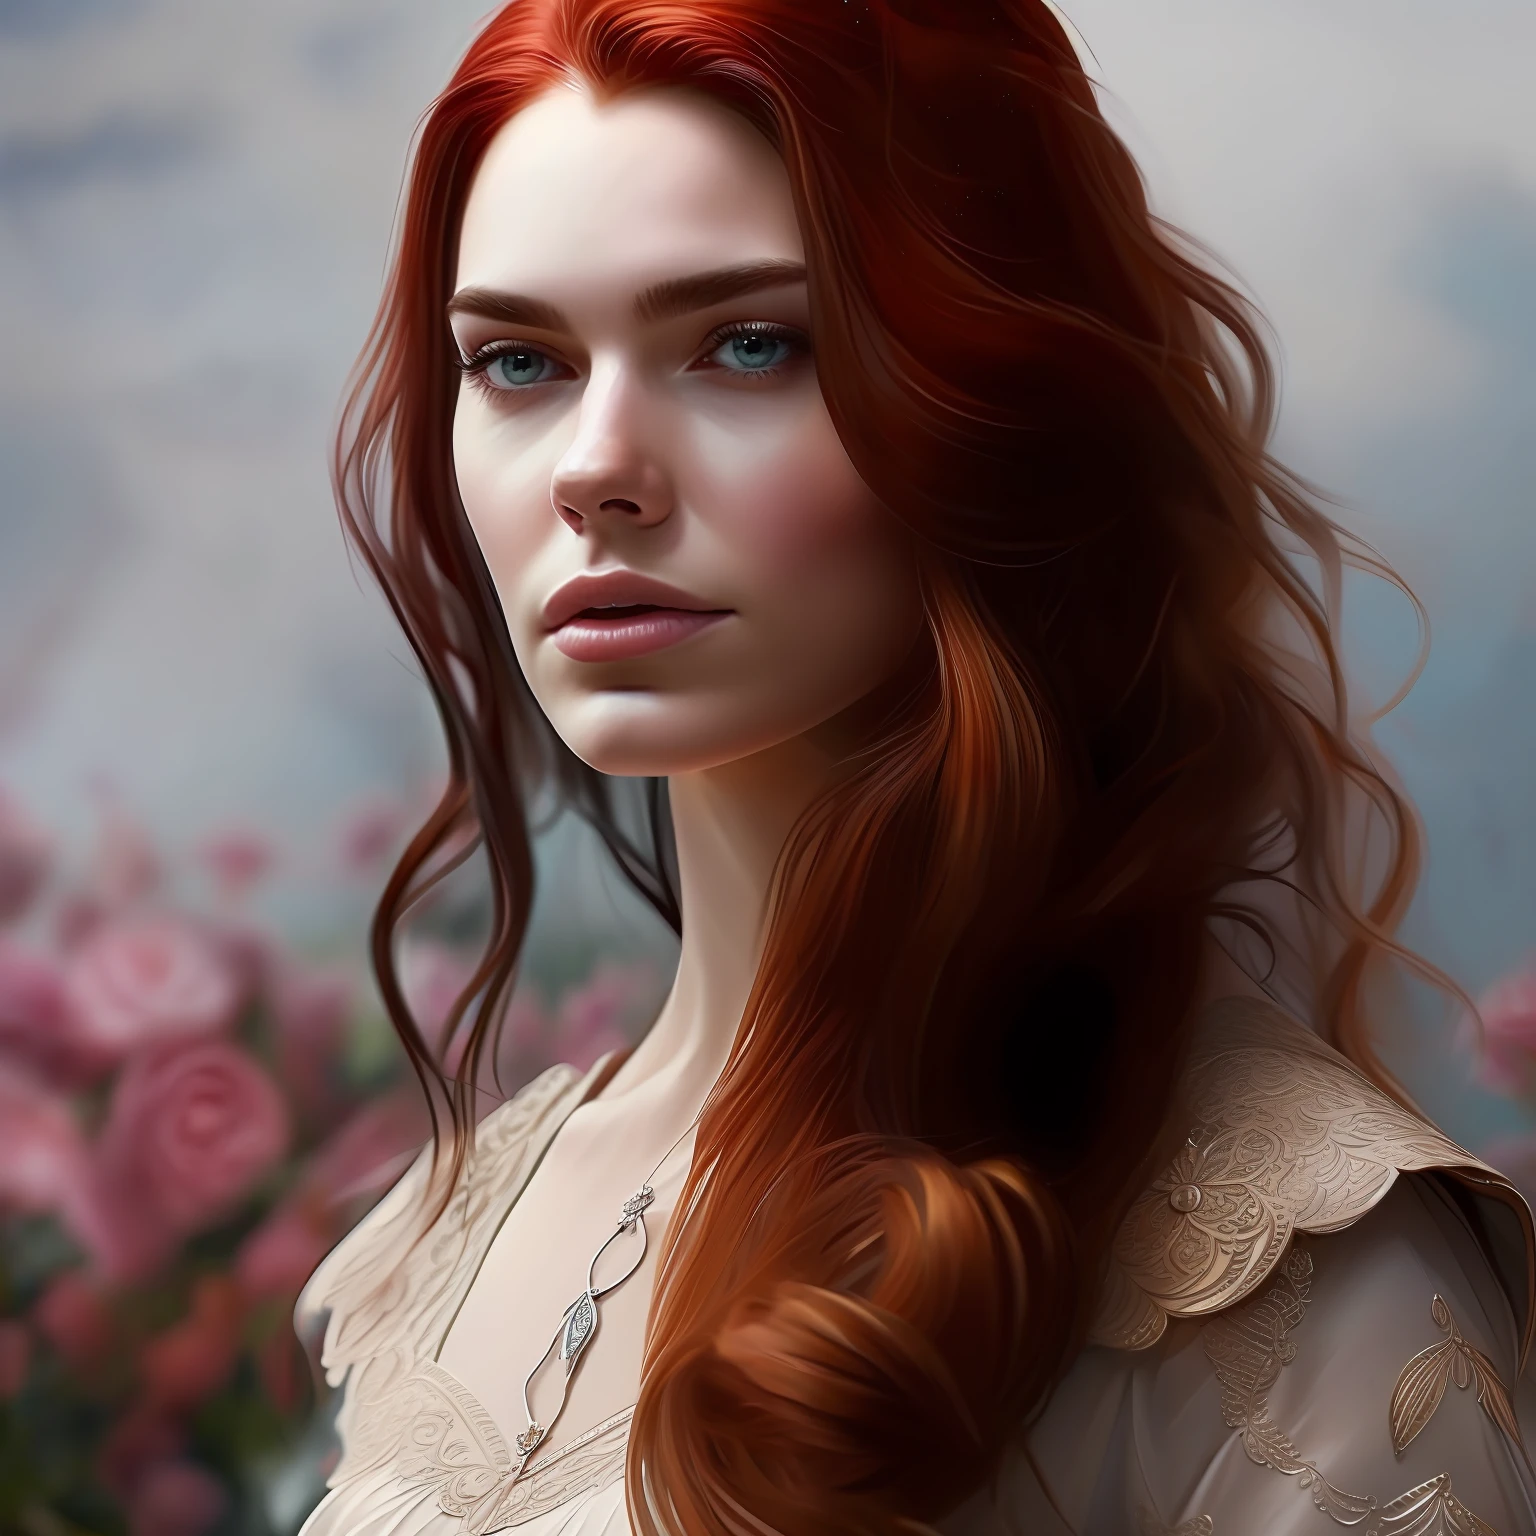 走进 Sarah J 的迷人世界. Maas 的《荆棘与玫瑰的王庭》系列，发挥你的艺术才能，捕捉 Feyre 的精髓, 坚韧不拔、非凡非凡的主角. 火红的头发披散在她坚毅的脸上, 描绘了她坚定的决心和内在的力量. 从她翠绿色的眼睛到她瓷器般皮肤上微妙的雀斑, 每一个细致的细节都讲述着坚韧和成长的故事. 以神秘的普里提亚王国为背景, 茂密的森林, 娇嫩的花朵, 隐藏的秘密正在等待. 让背景照亮春宫和其田园风光的美丽, 鲜艳的色彩和盛开的鲜花反映了 Feyre 所体现的重生和转变. 作为艺术家, 捕捉这个迷人角色的精神, 引起观众的惊奇和钦佩, 当他们深入她的爱情之旅时, 牺牲, 和自我发现."